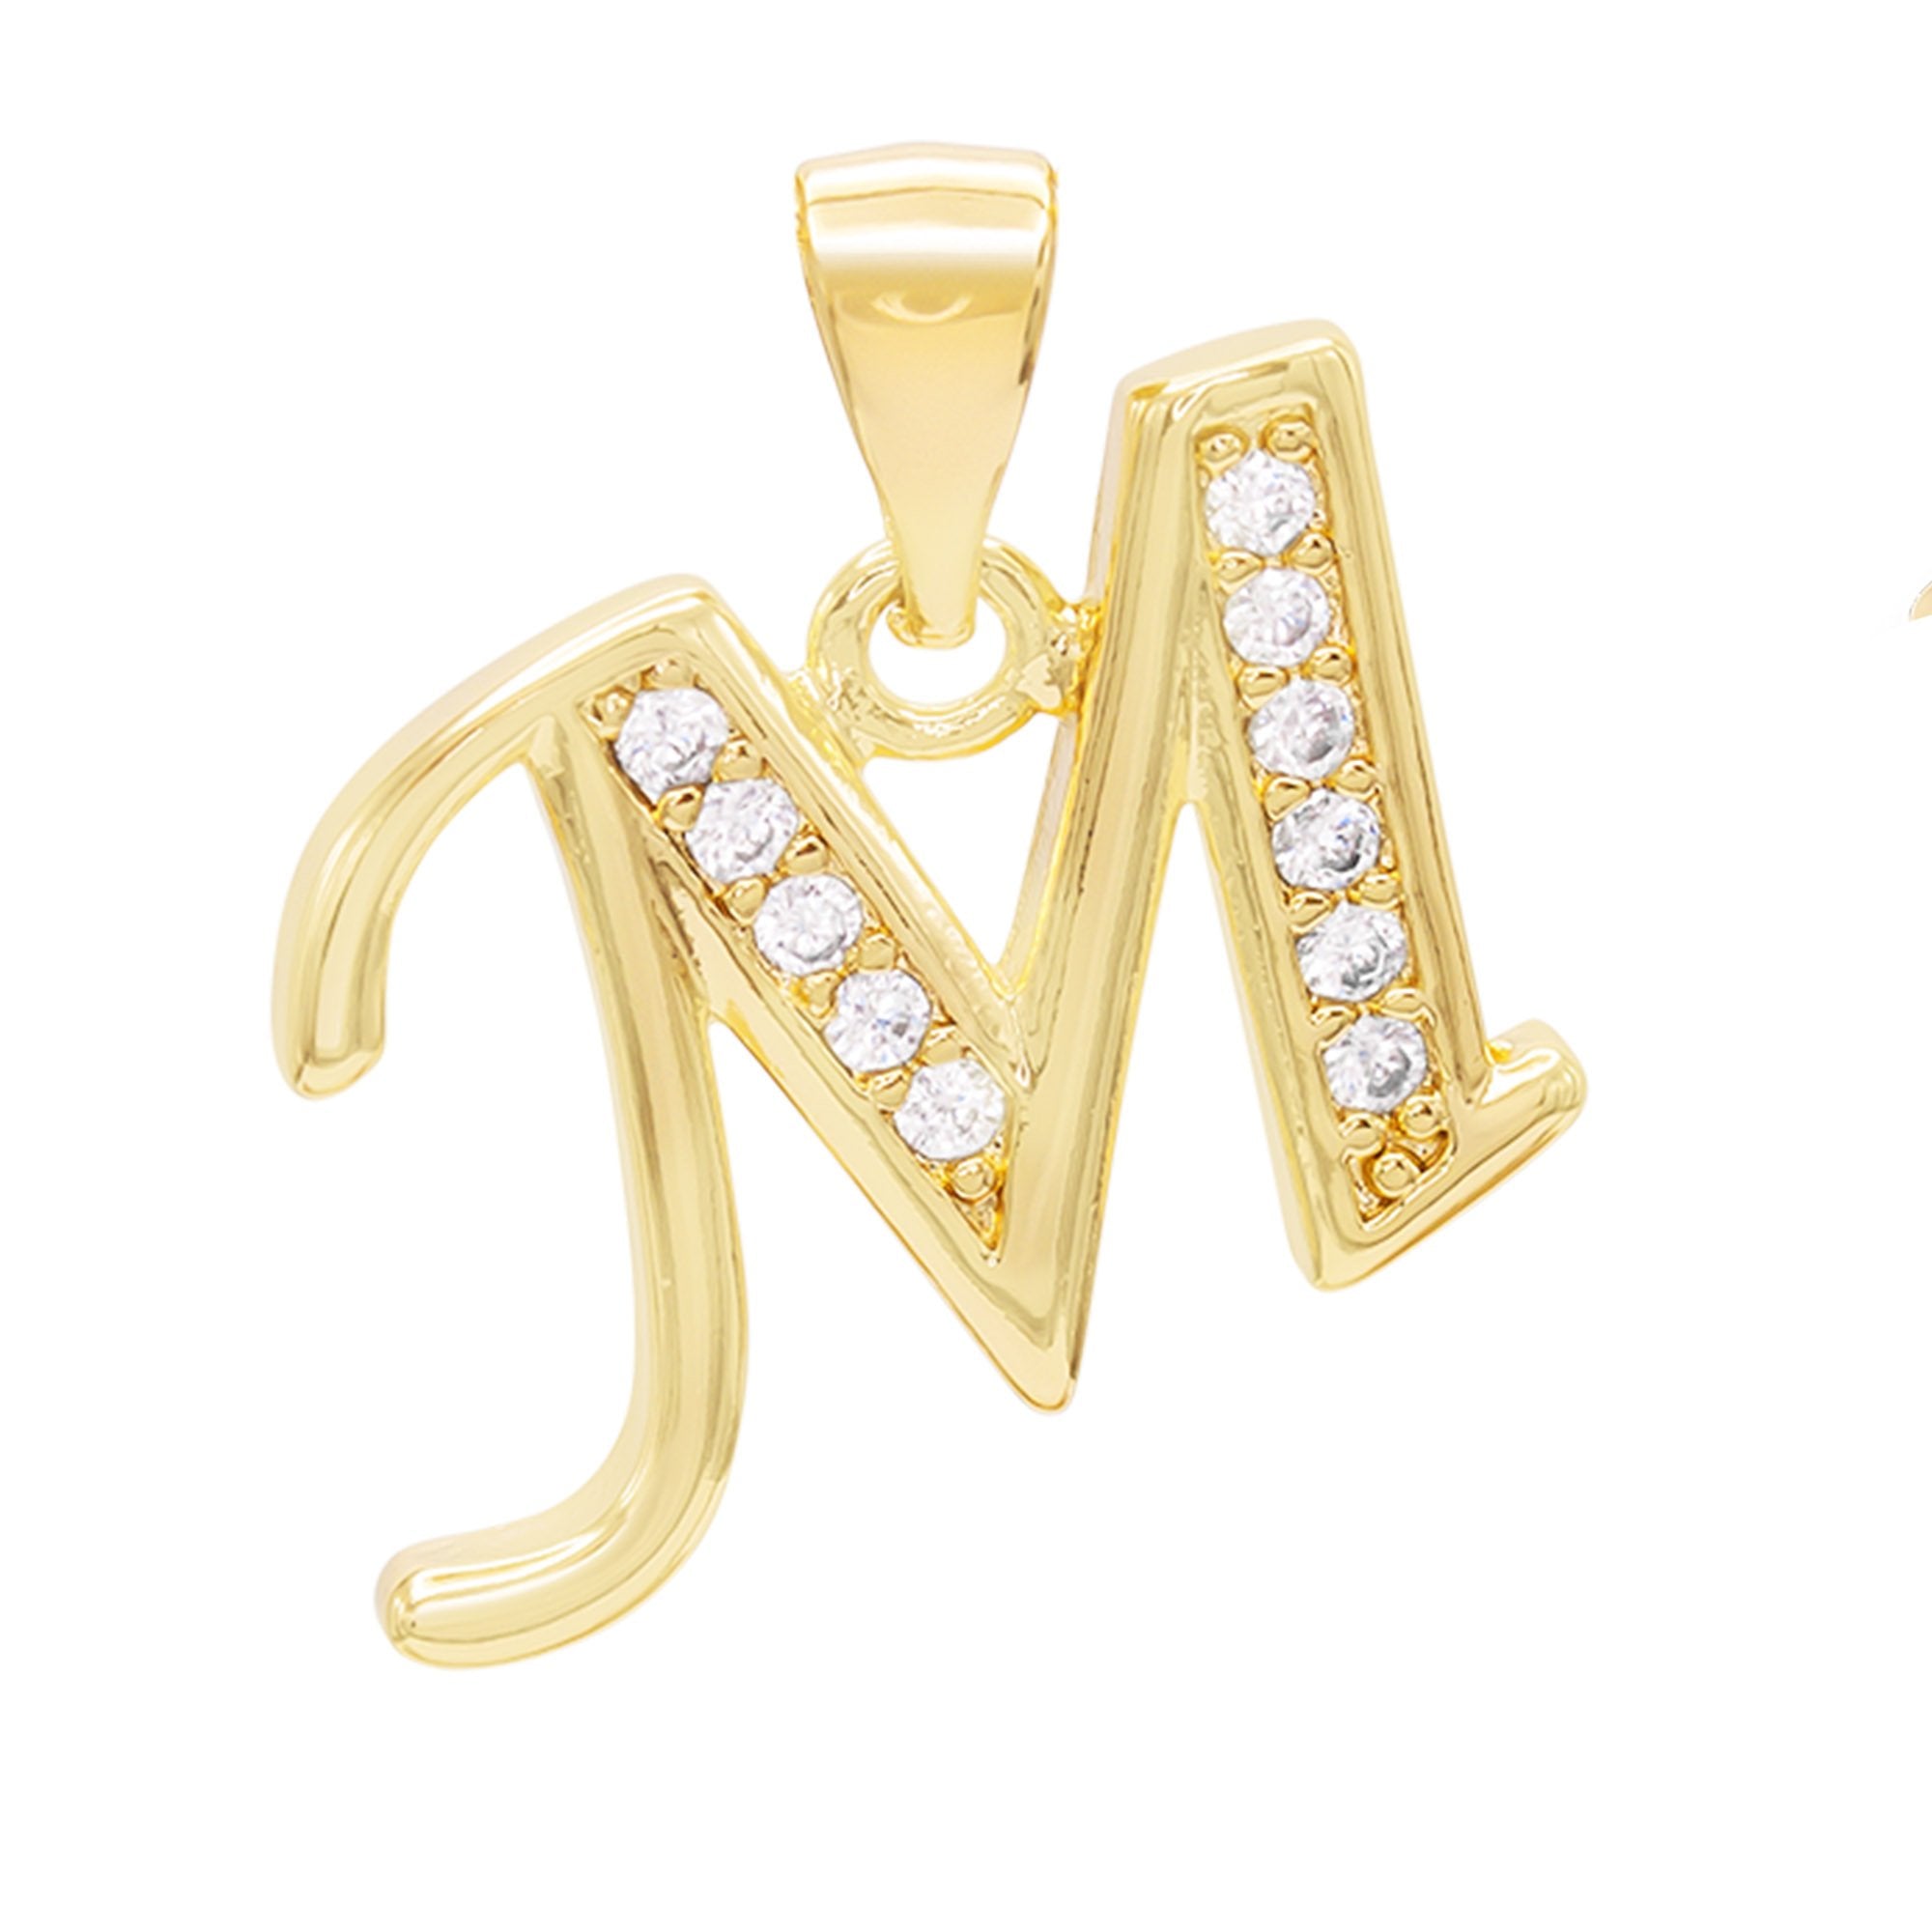 Alphabet A-Z Initial Letter CZ Pendant 14K Gold Filled Box Chain Set 18" 20" 24" Women Necklace Set